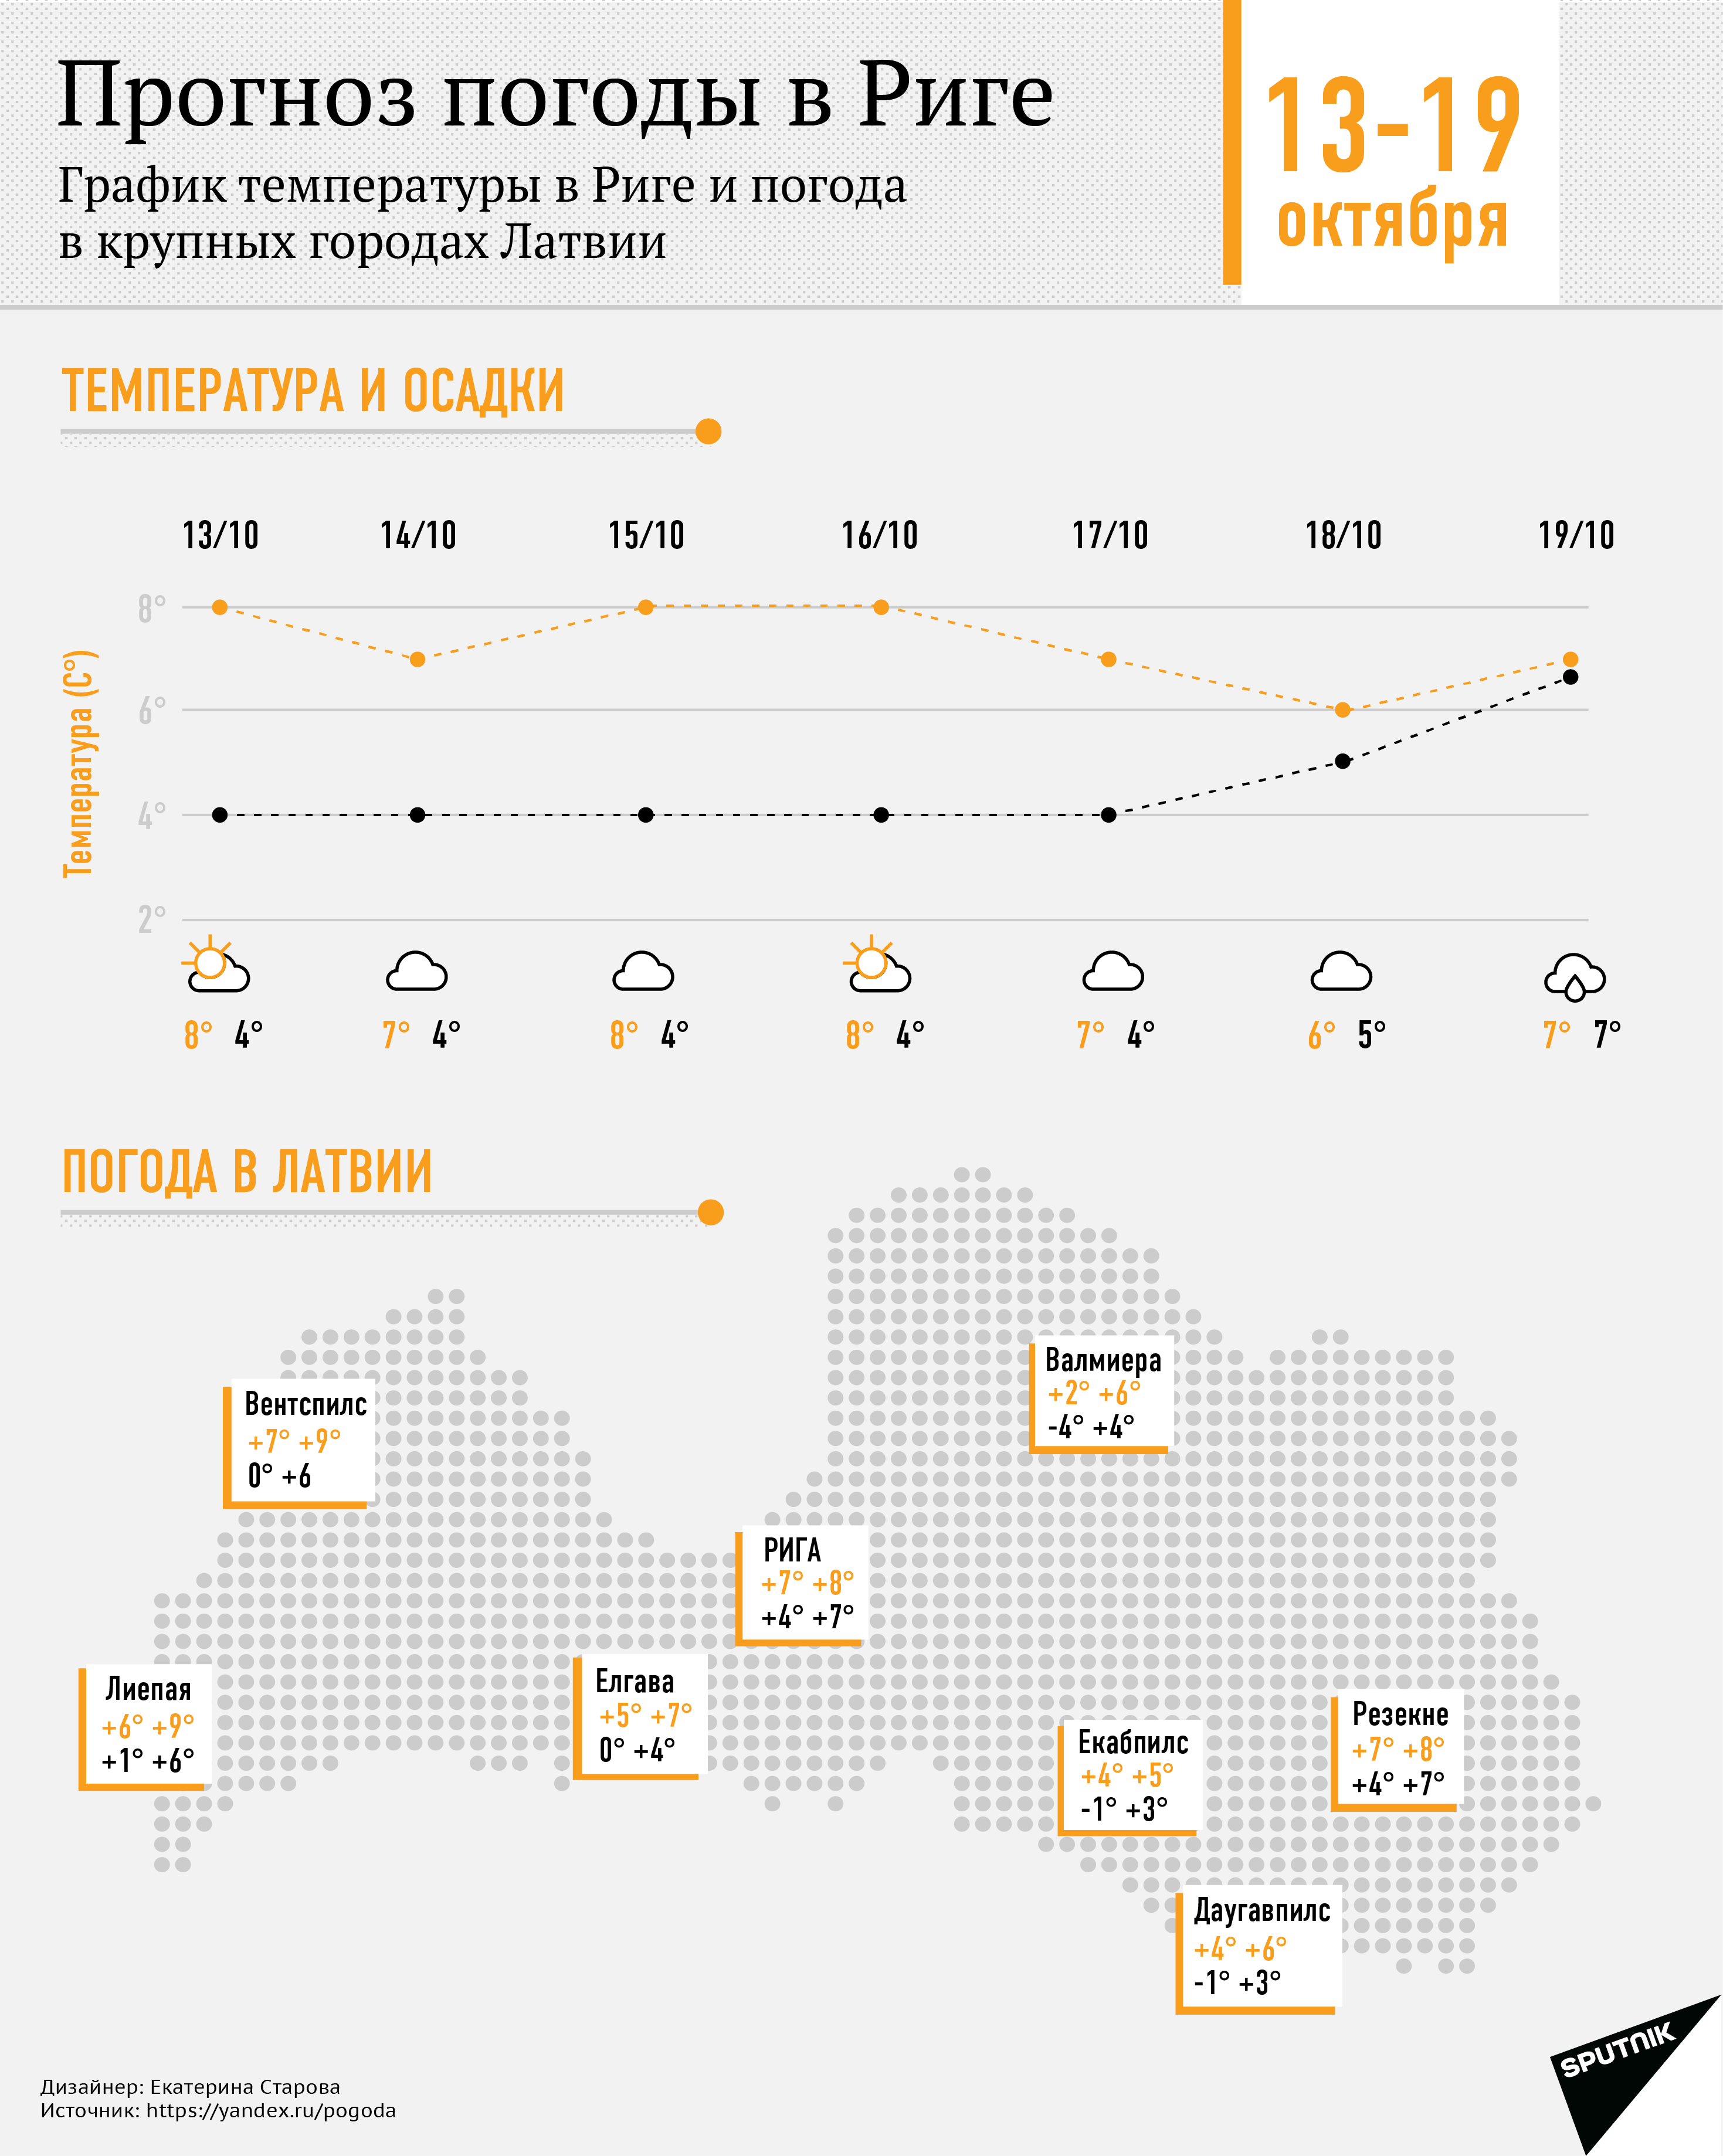 Прогноз погоды в Риге - Sputnik Латвия